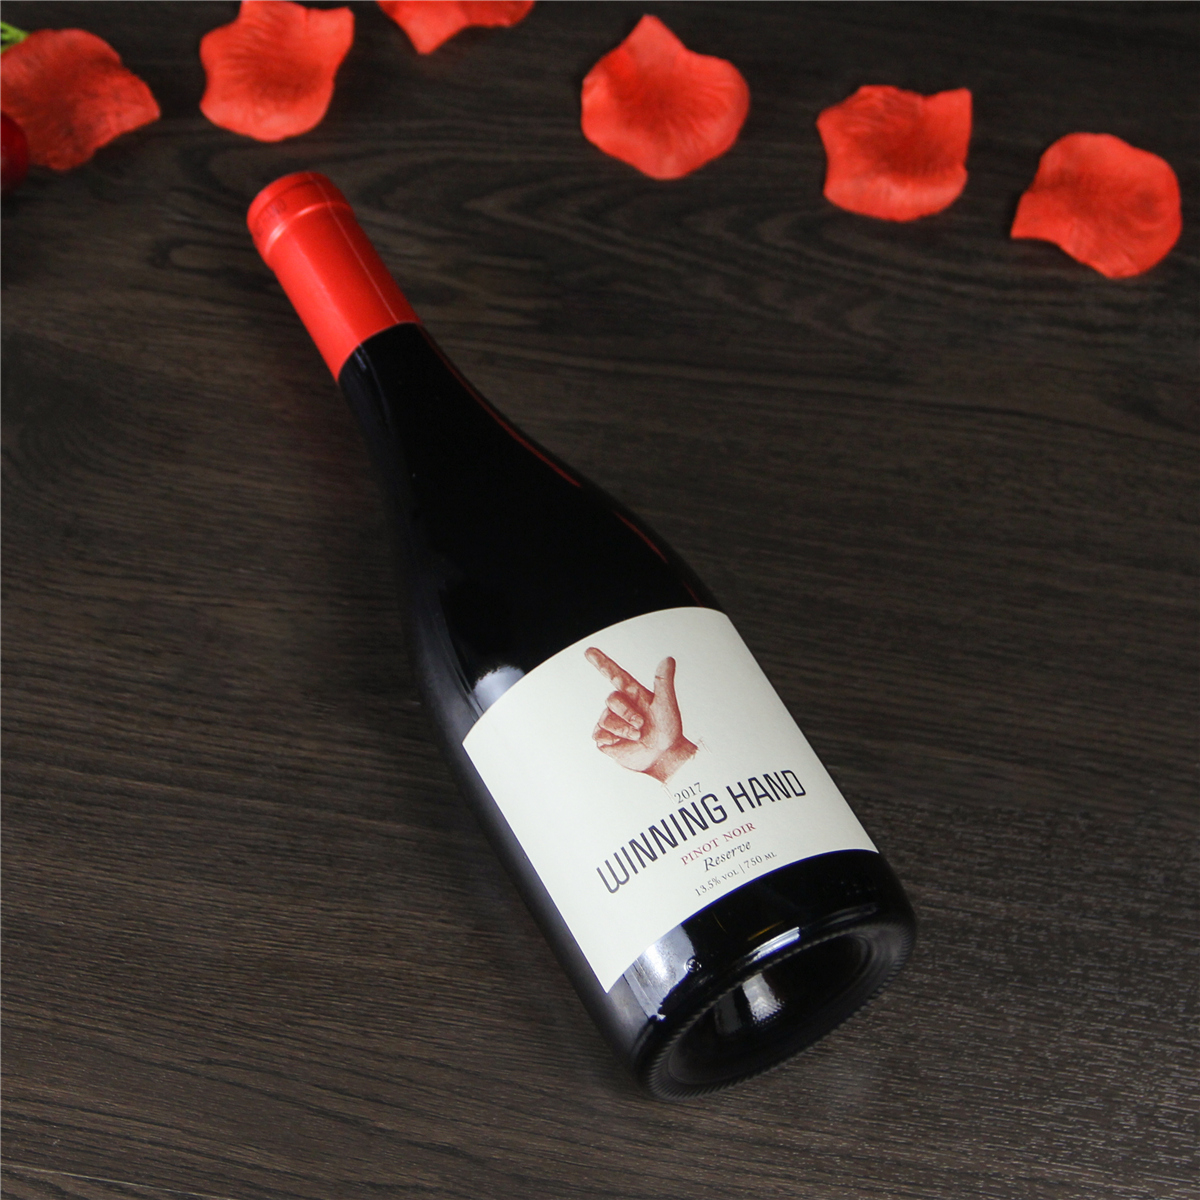 智利库里科谷凯旋之手珍藏黑皮诺干红葡萄酒红酒